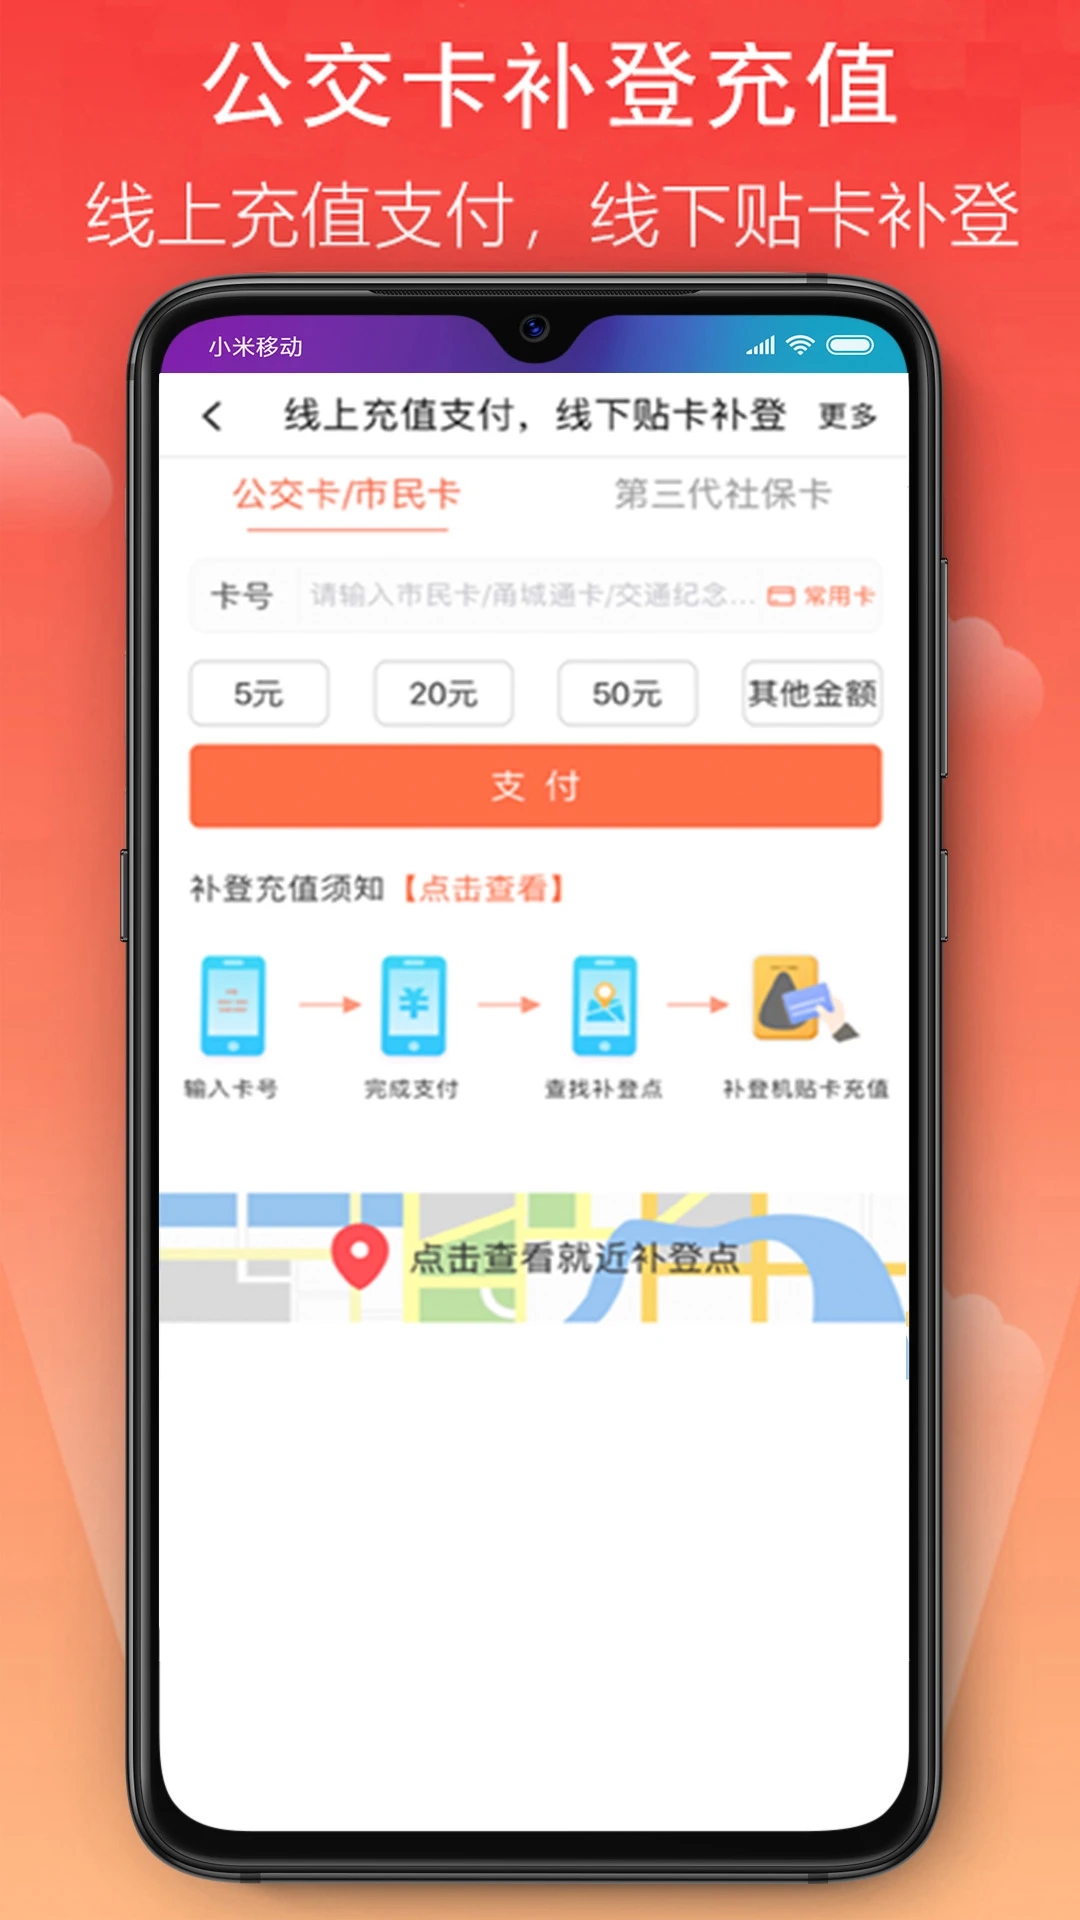 宁波市民卡app下载 第1张图片